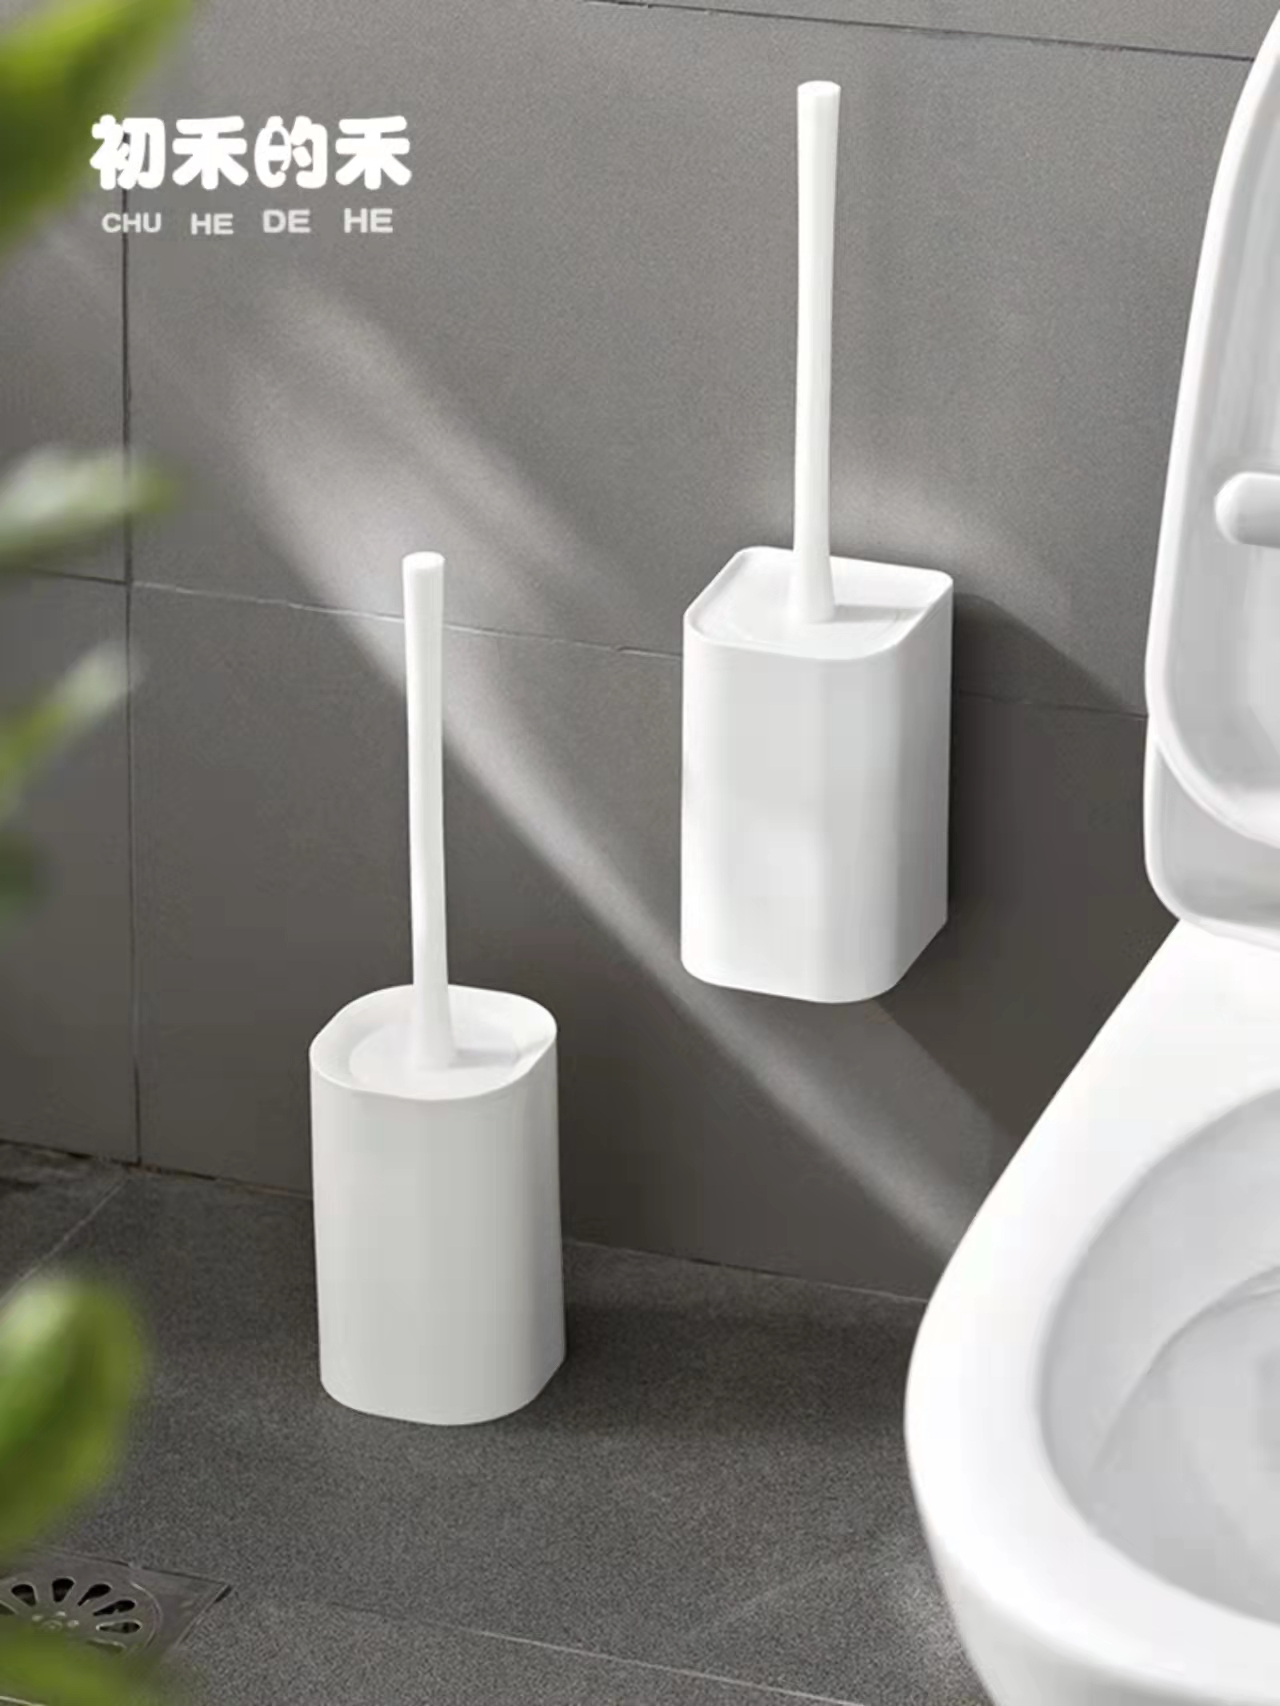 套装壁挂式马桶刷日本免打孔上墙家用卫生间厕所硅胶新款清洁刷子